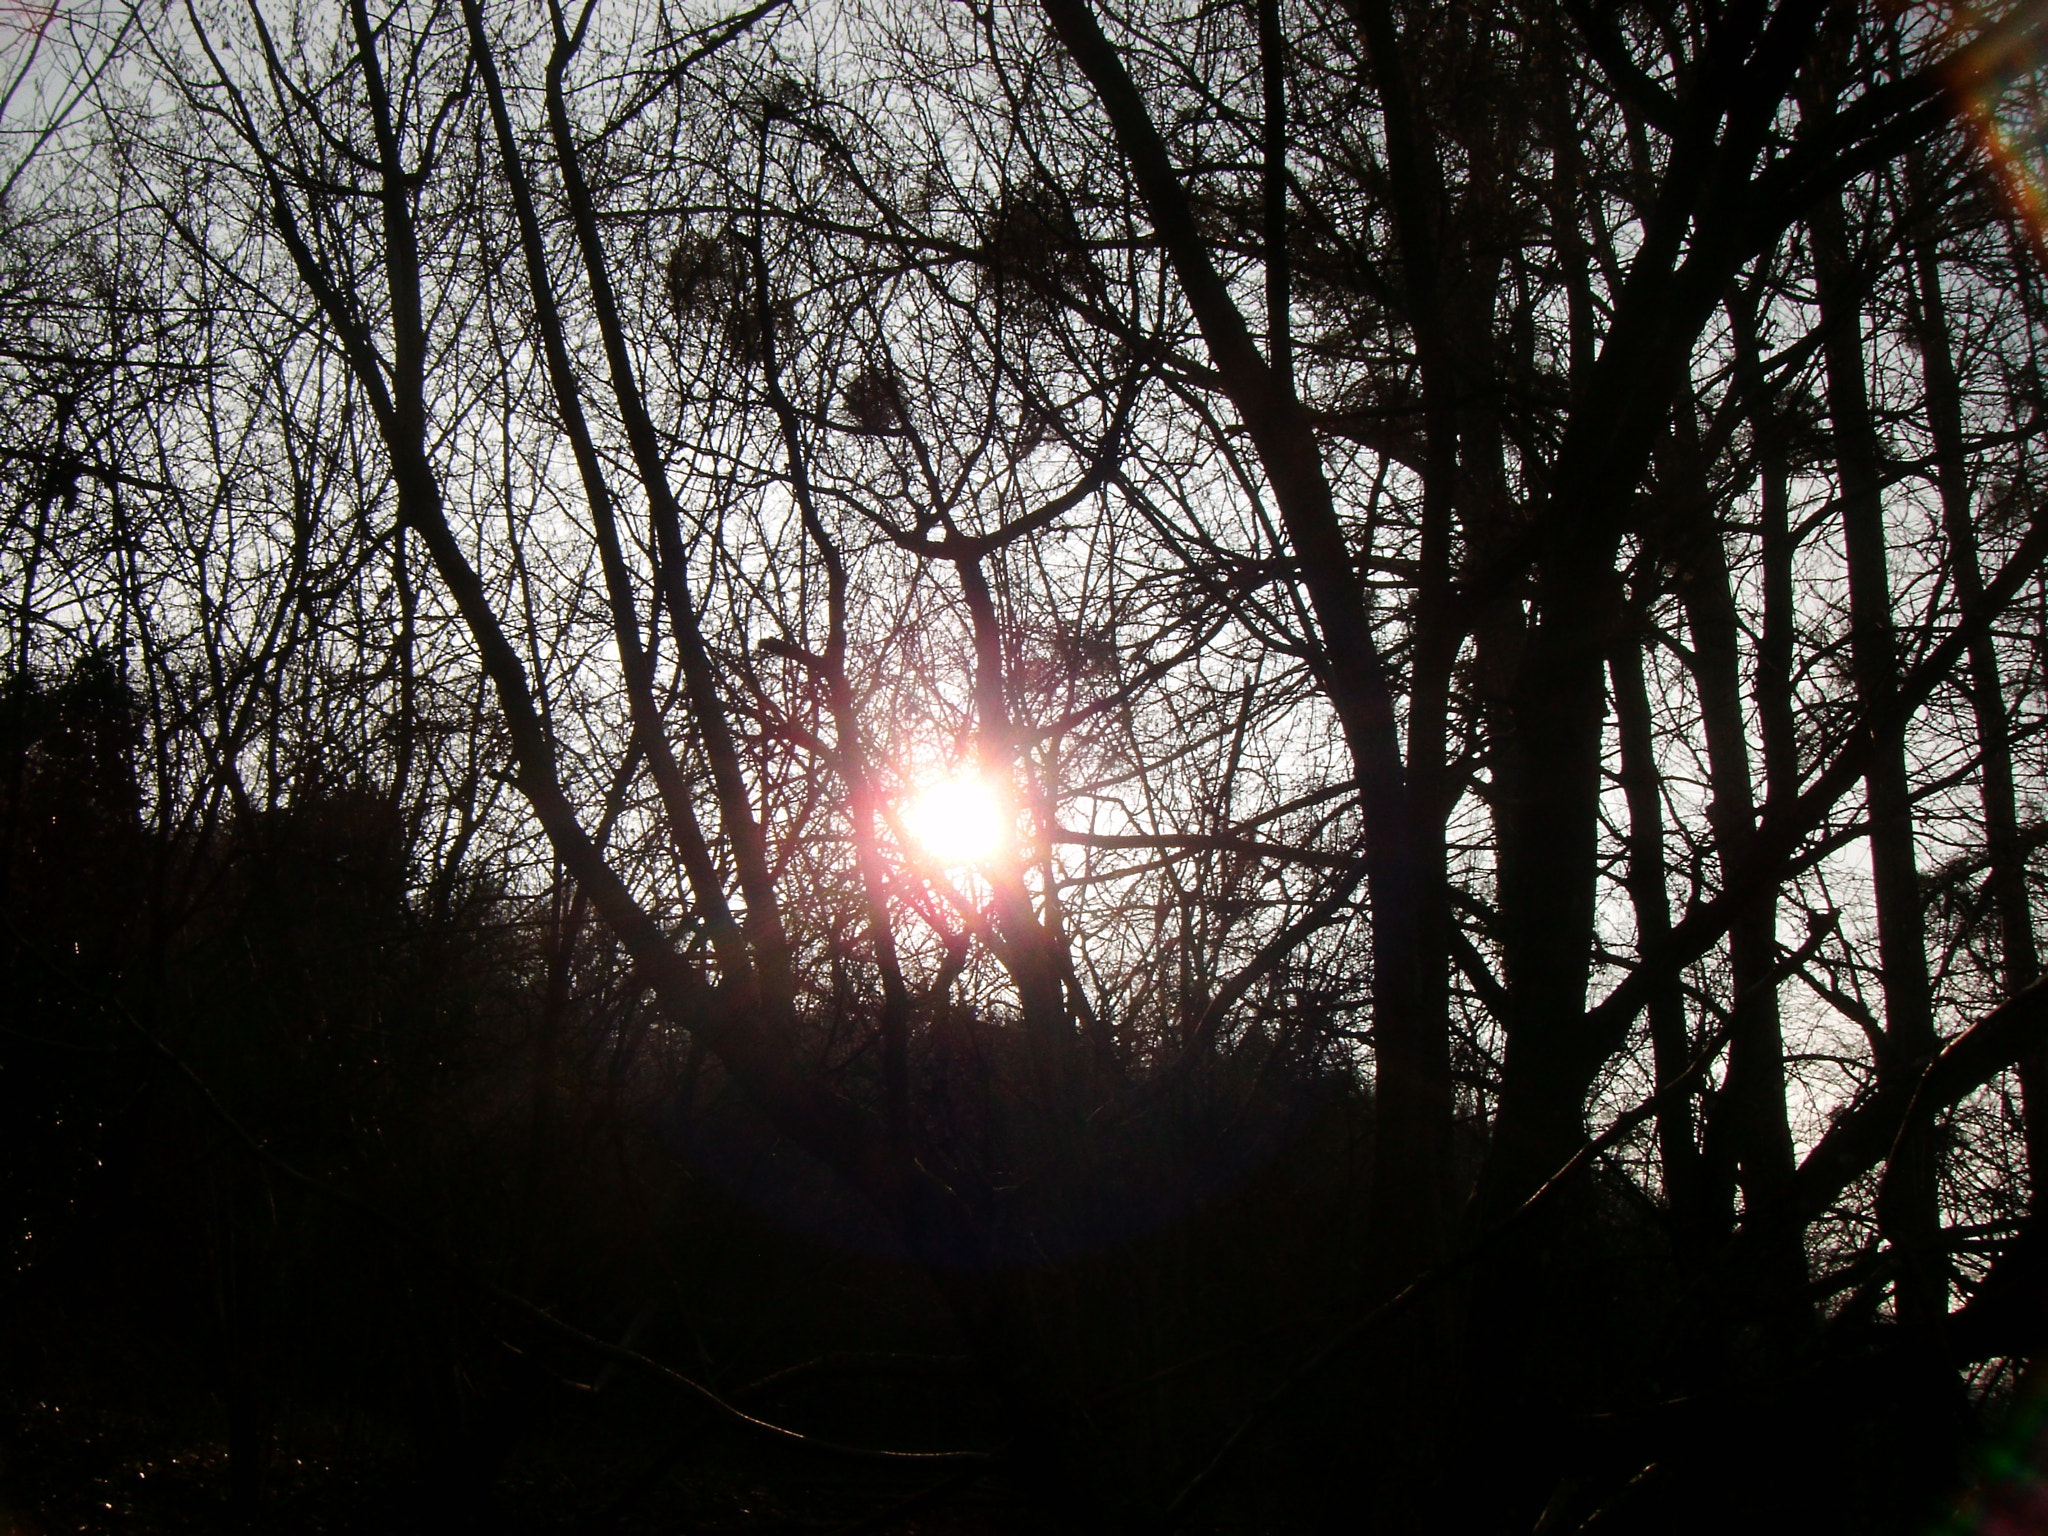 Fujifilm FinePix Z35 sample photo. Petit soleil derrière les branches d'arbres photography